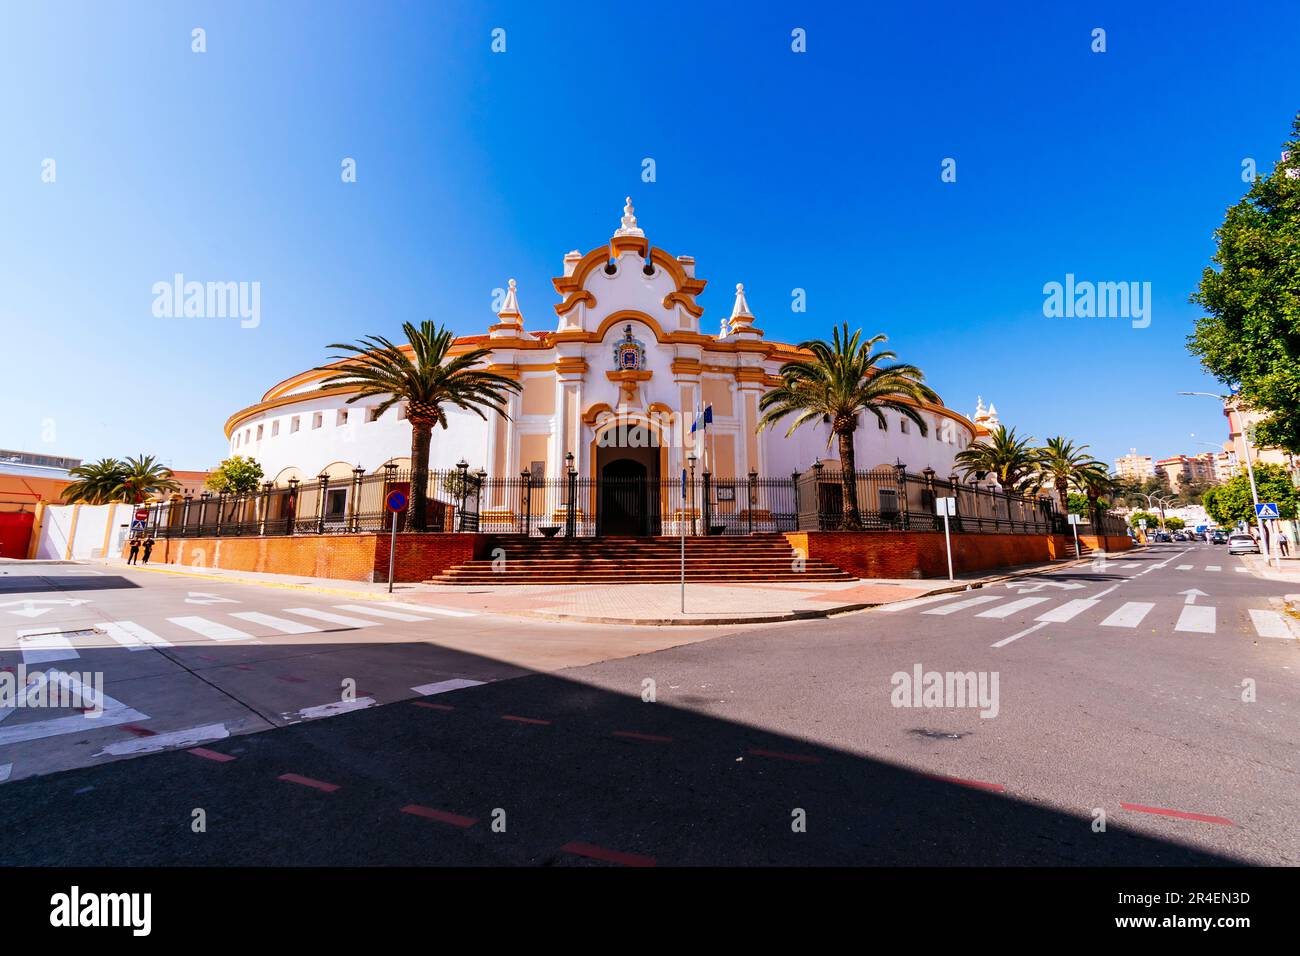 Die Stierkampfarena von Melilla, auch bekannt als die Moschee der Stierkämpfe, Mezquita del toreo. Es ist eine der neun Stierkampfarenen in Afrika und die einzige Stockfoto